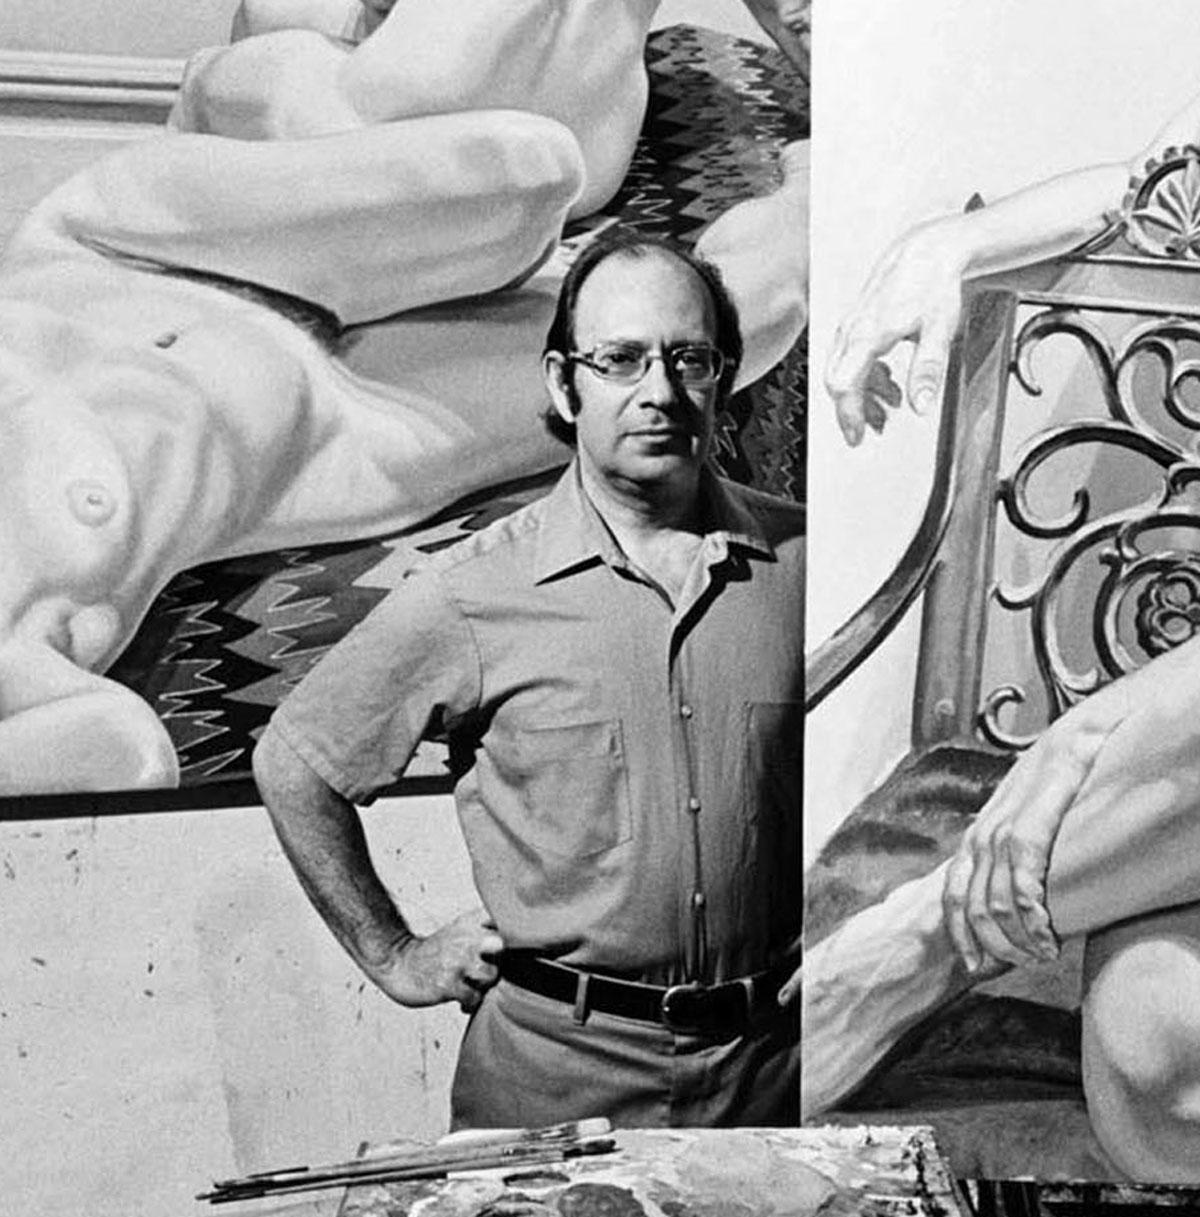  L'artiste Philip Pearlstein dans son atelier avec ses peintures - Photograph de Jack Mitchell